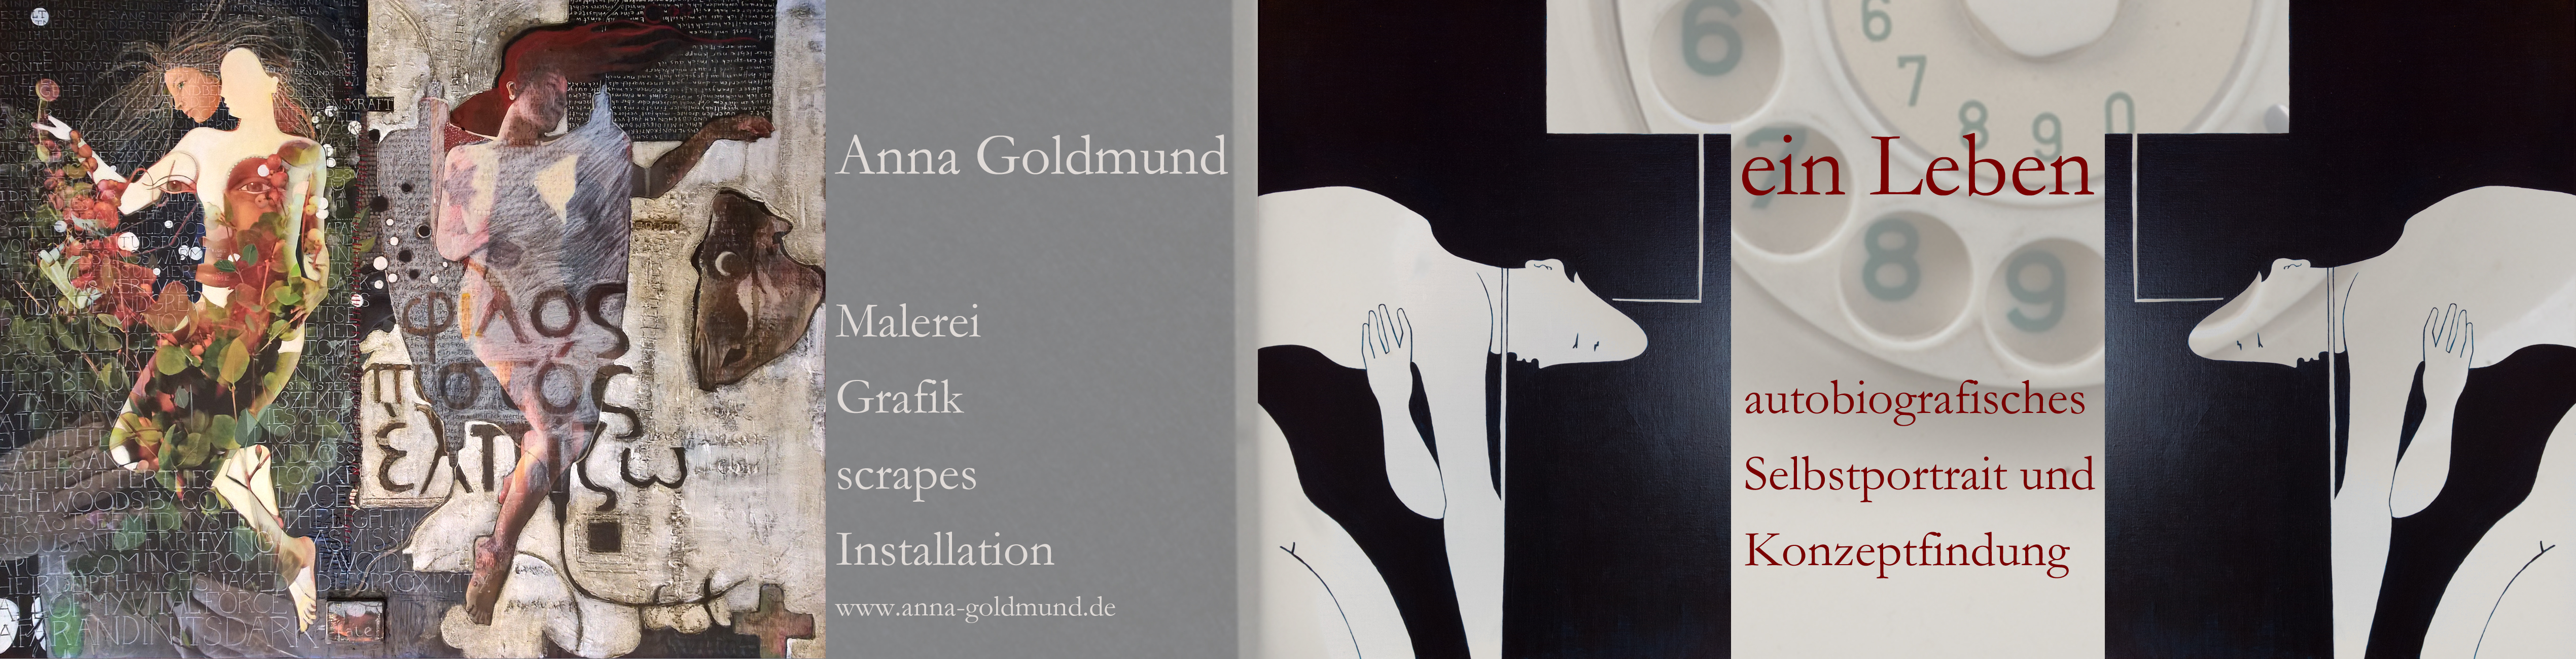 Anna Goldmund „Ein Leben“ Teil 1 | autobiografisches Selbstportrait und Konzeptfindung Mischtechnik, Grafik, Installation